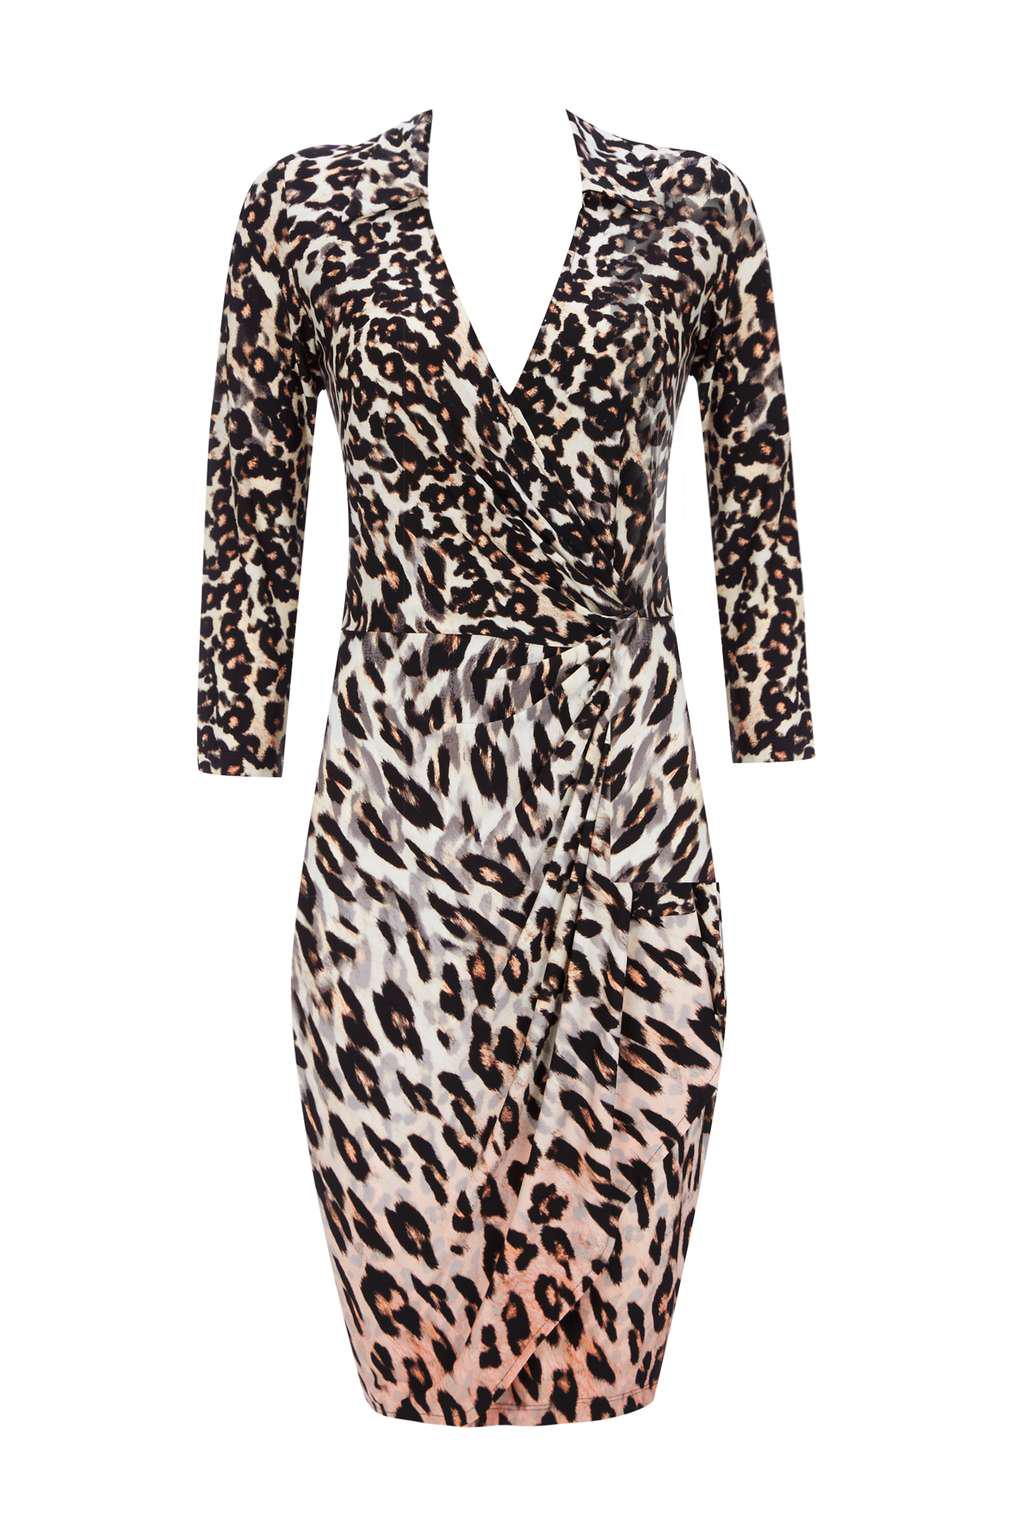 wallis leopard dress